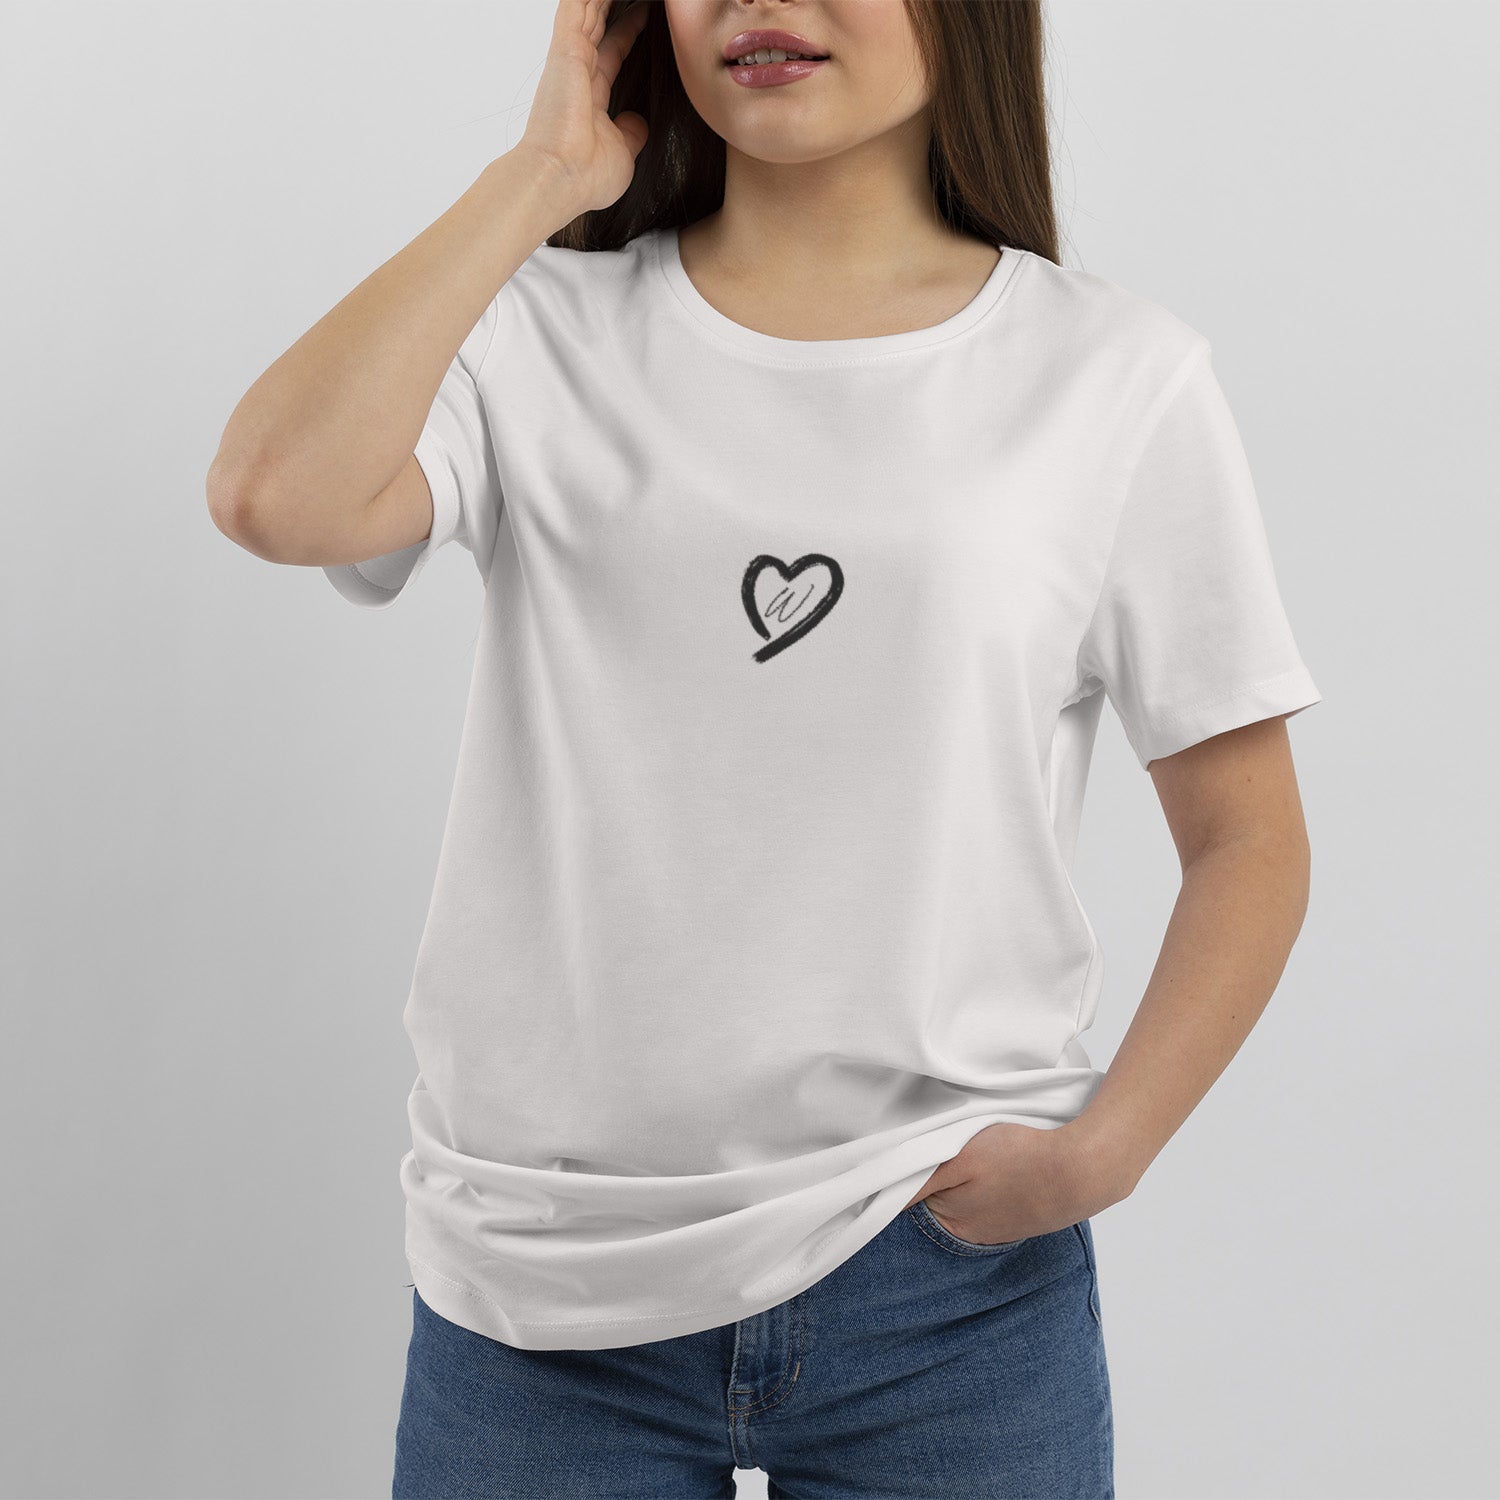 T-shirt Personnalisé Cœur Avec Initiale